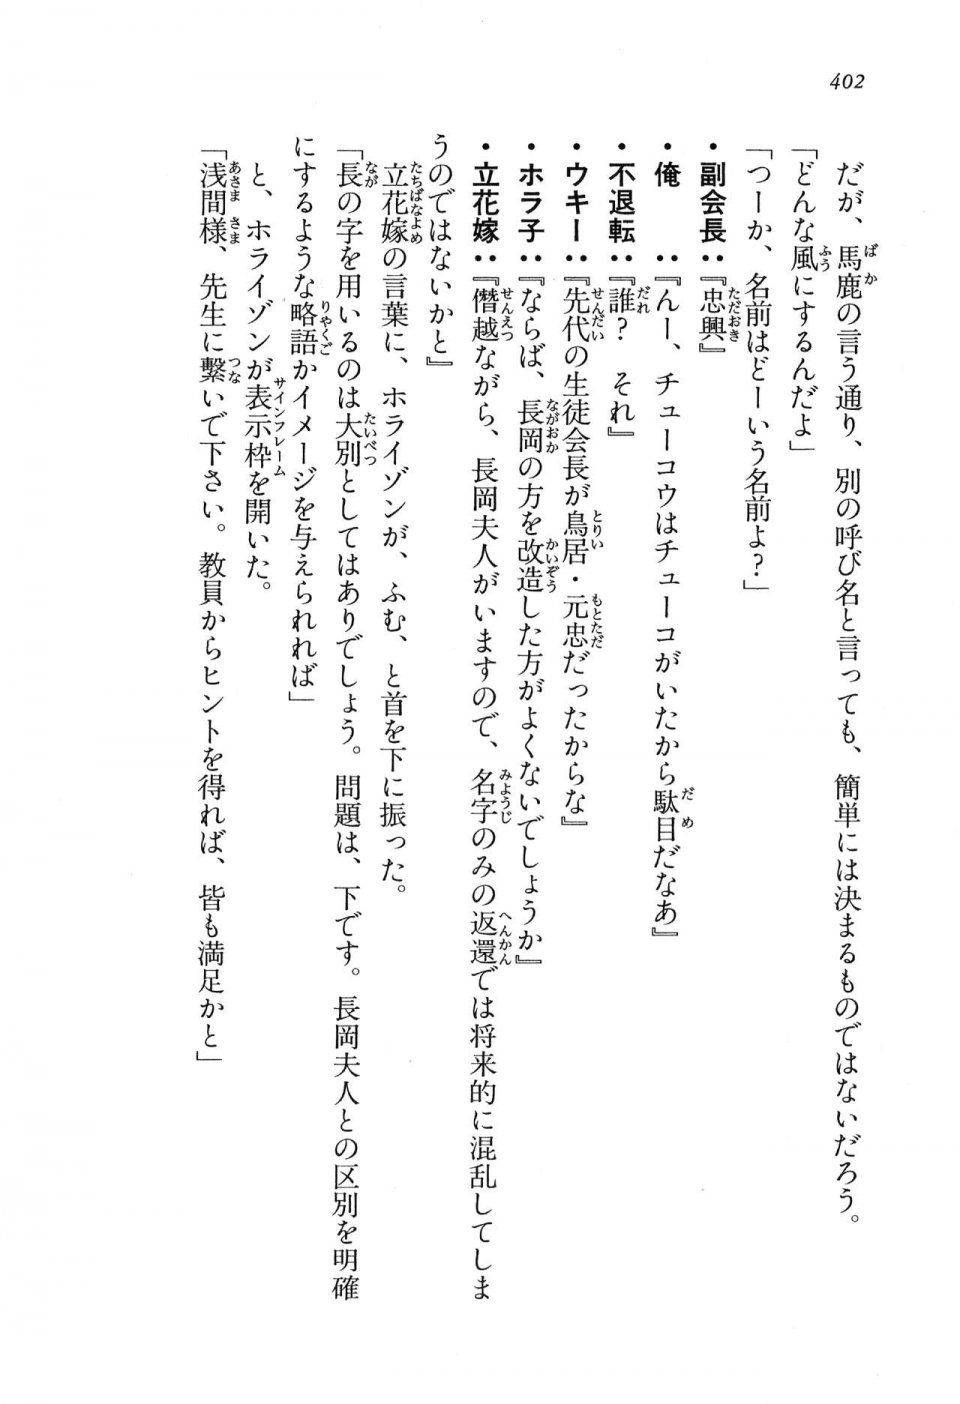 Kyoukai Senjou no Horizon LN Vol 16(7A) - Photo #402